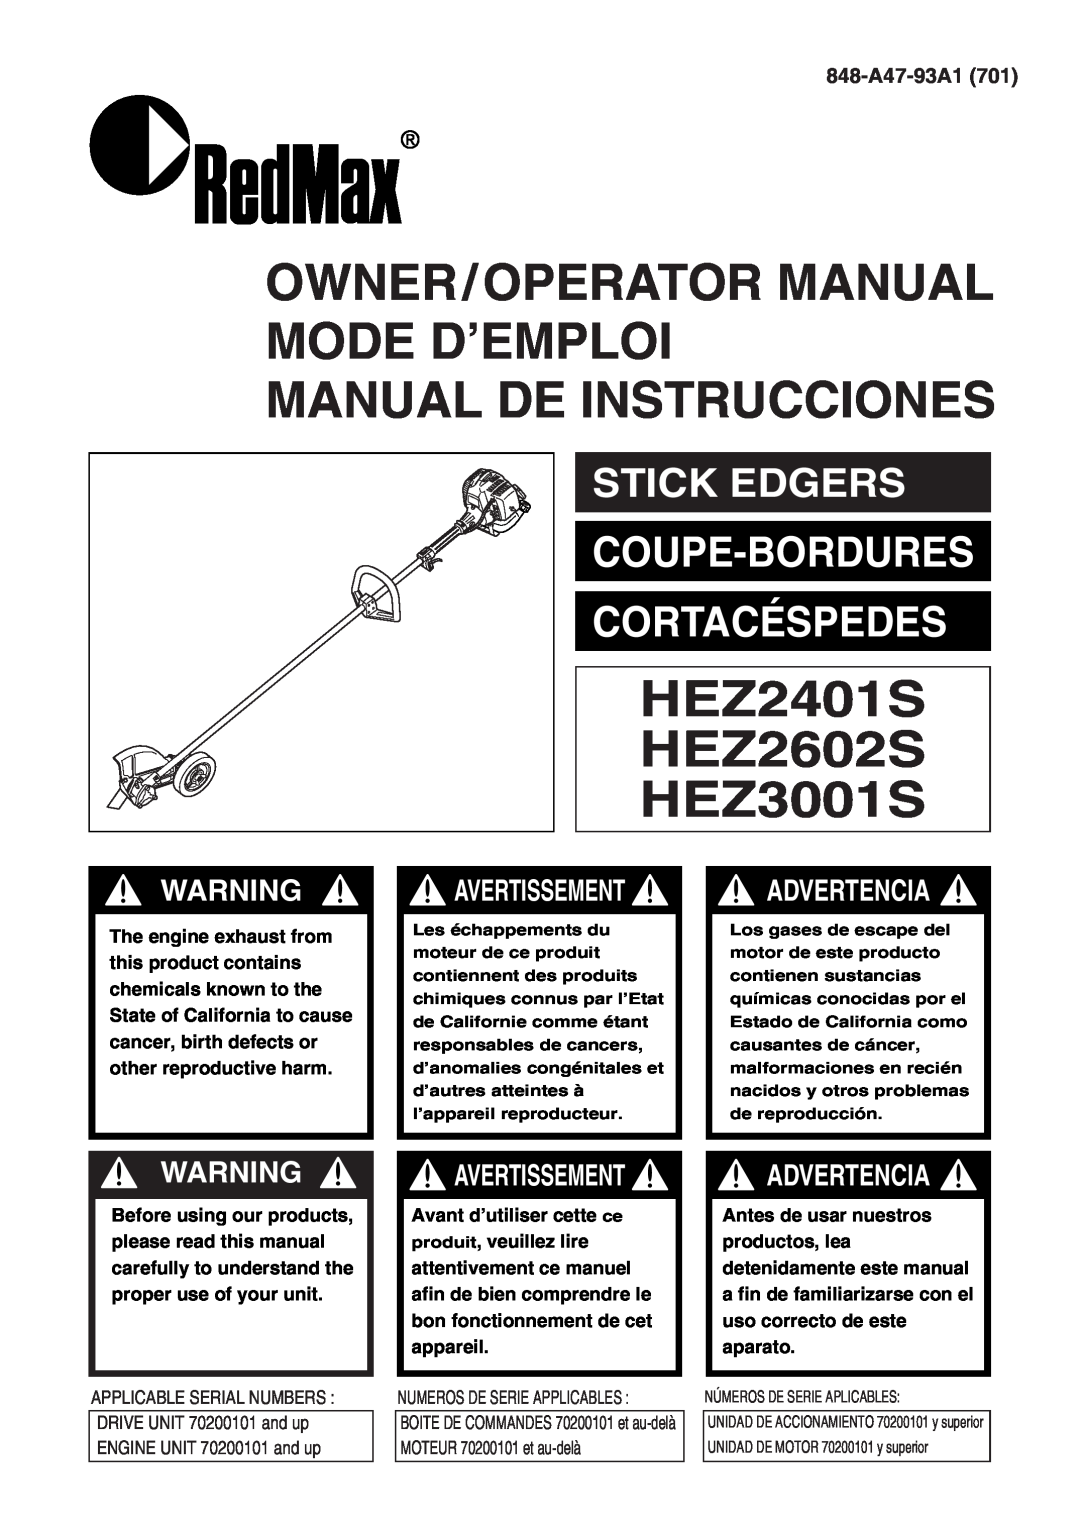 RedMax HEZ2602S, HEZ3001S manual Advertencia, 848-A47-93A1, Owner/Operator Manual Mode D’Emploi Manual De Instrucciones 